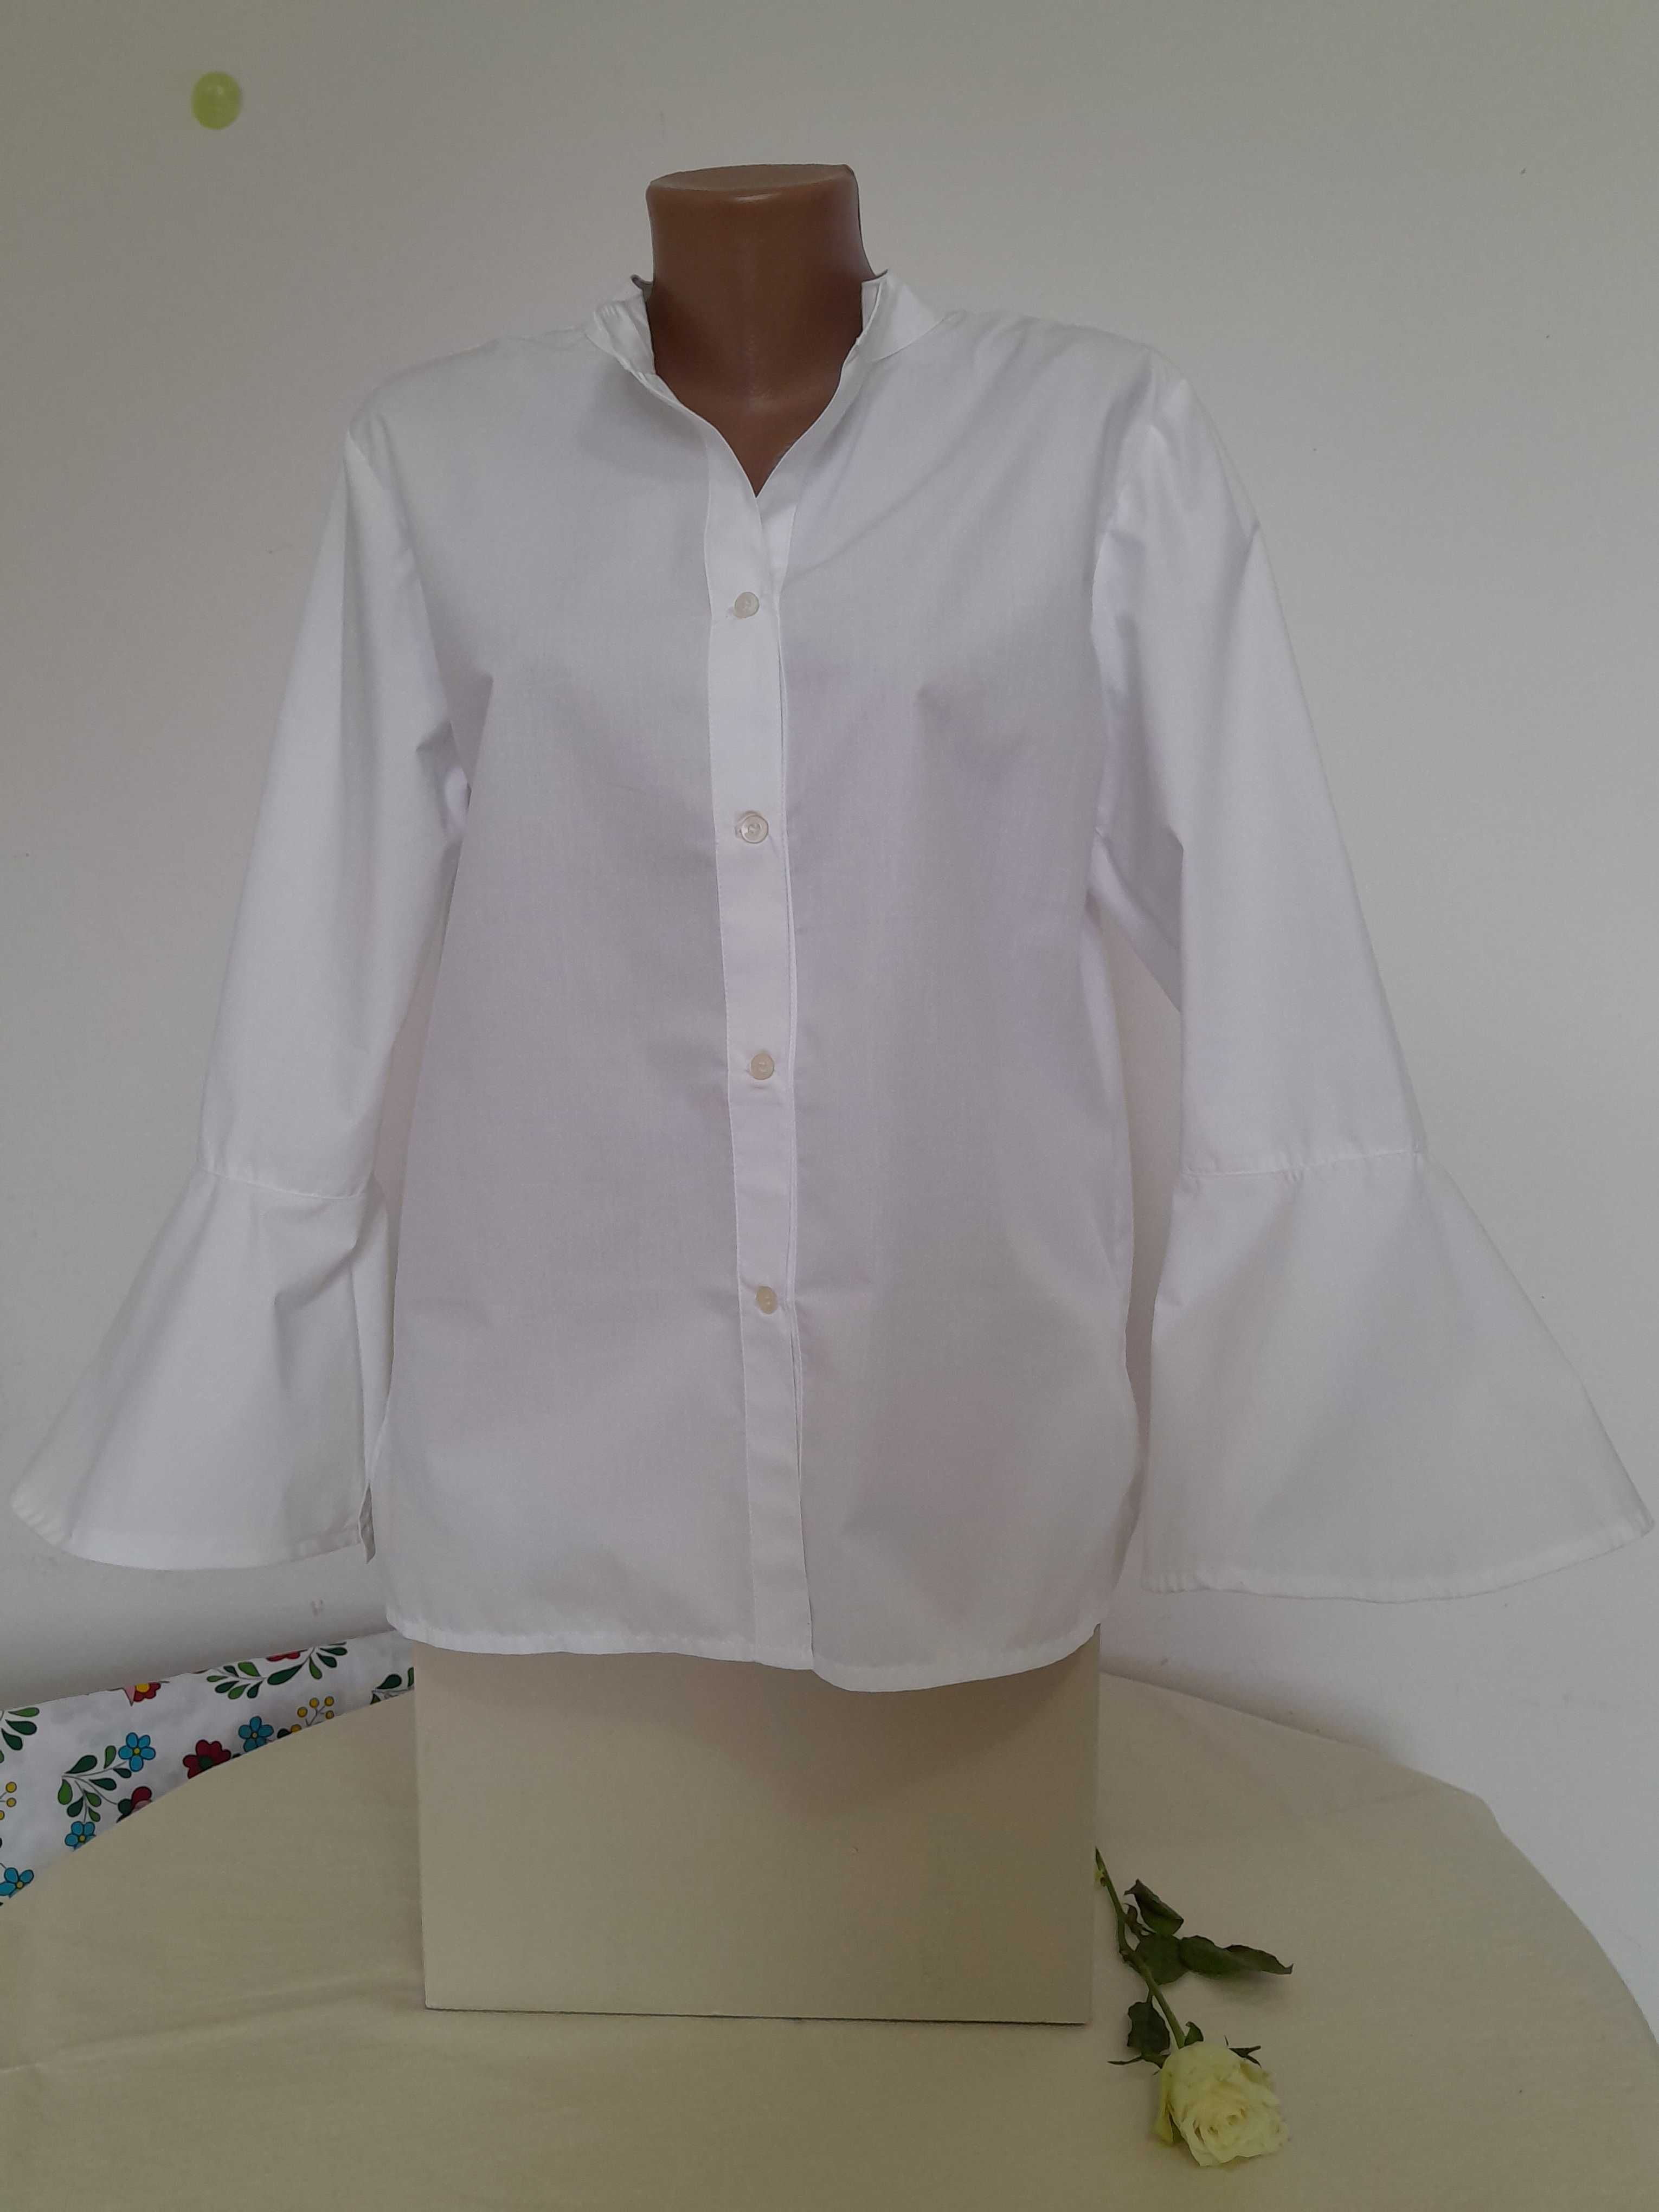 Bluze albe şi textile din bumbac